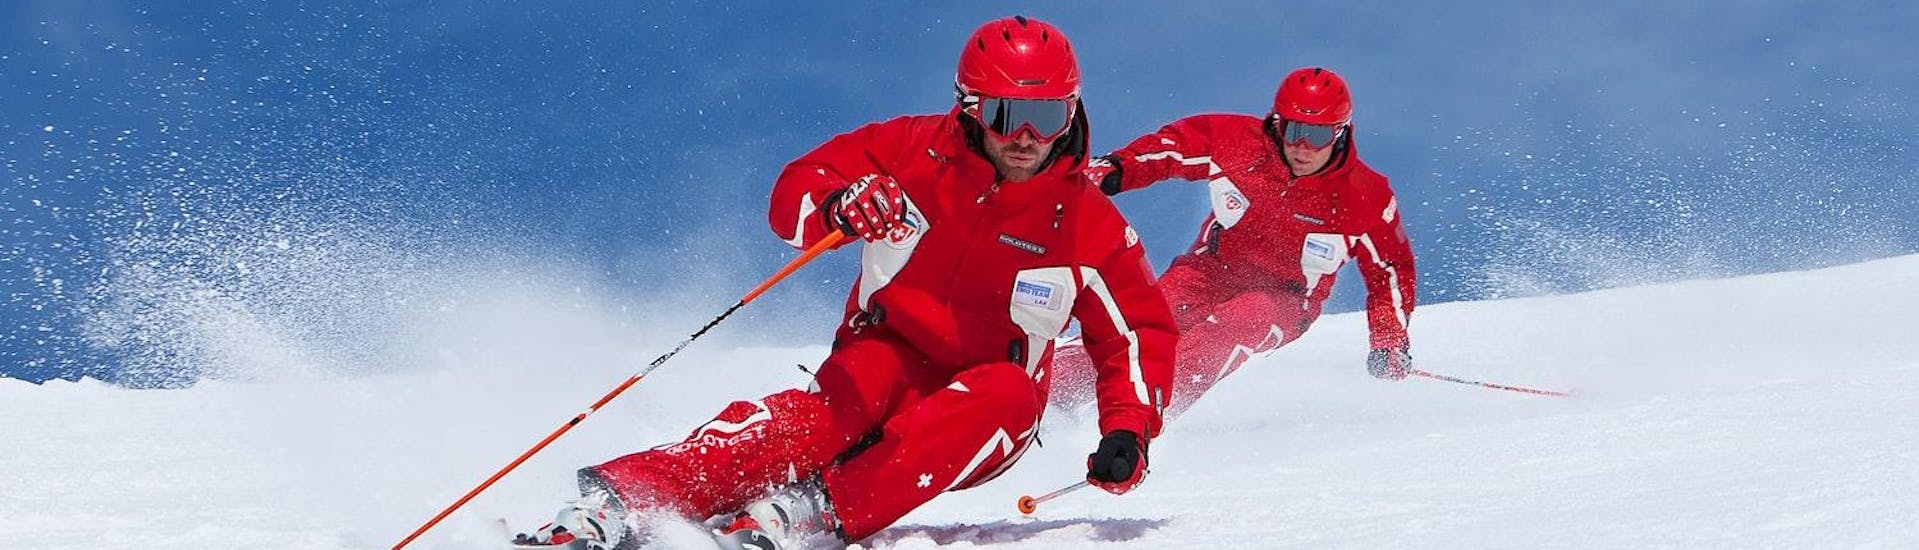 Privater Skikurs für Erwachsene aller Levels mit Erste Schweizer Skischule Samnaun - Hero image